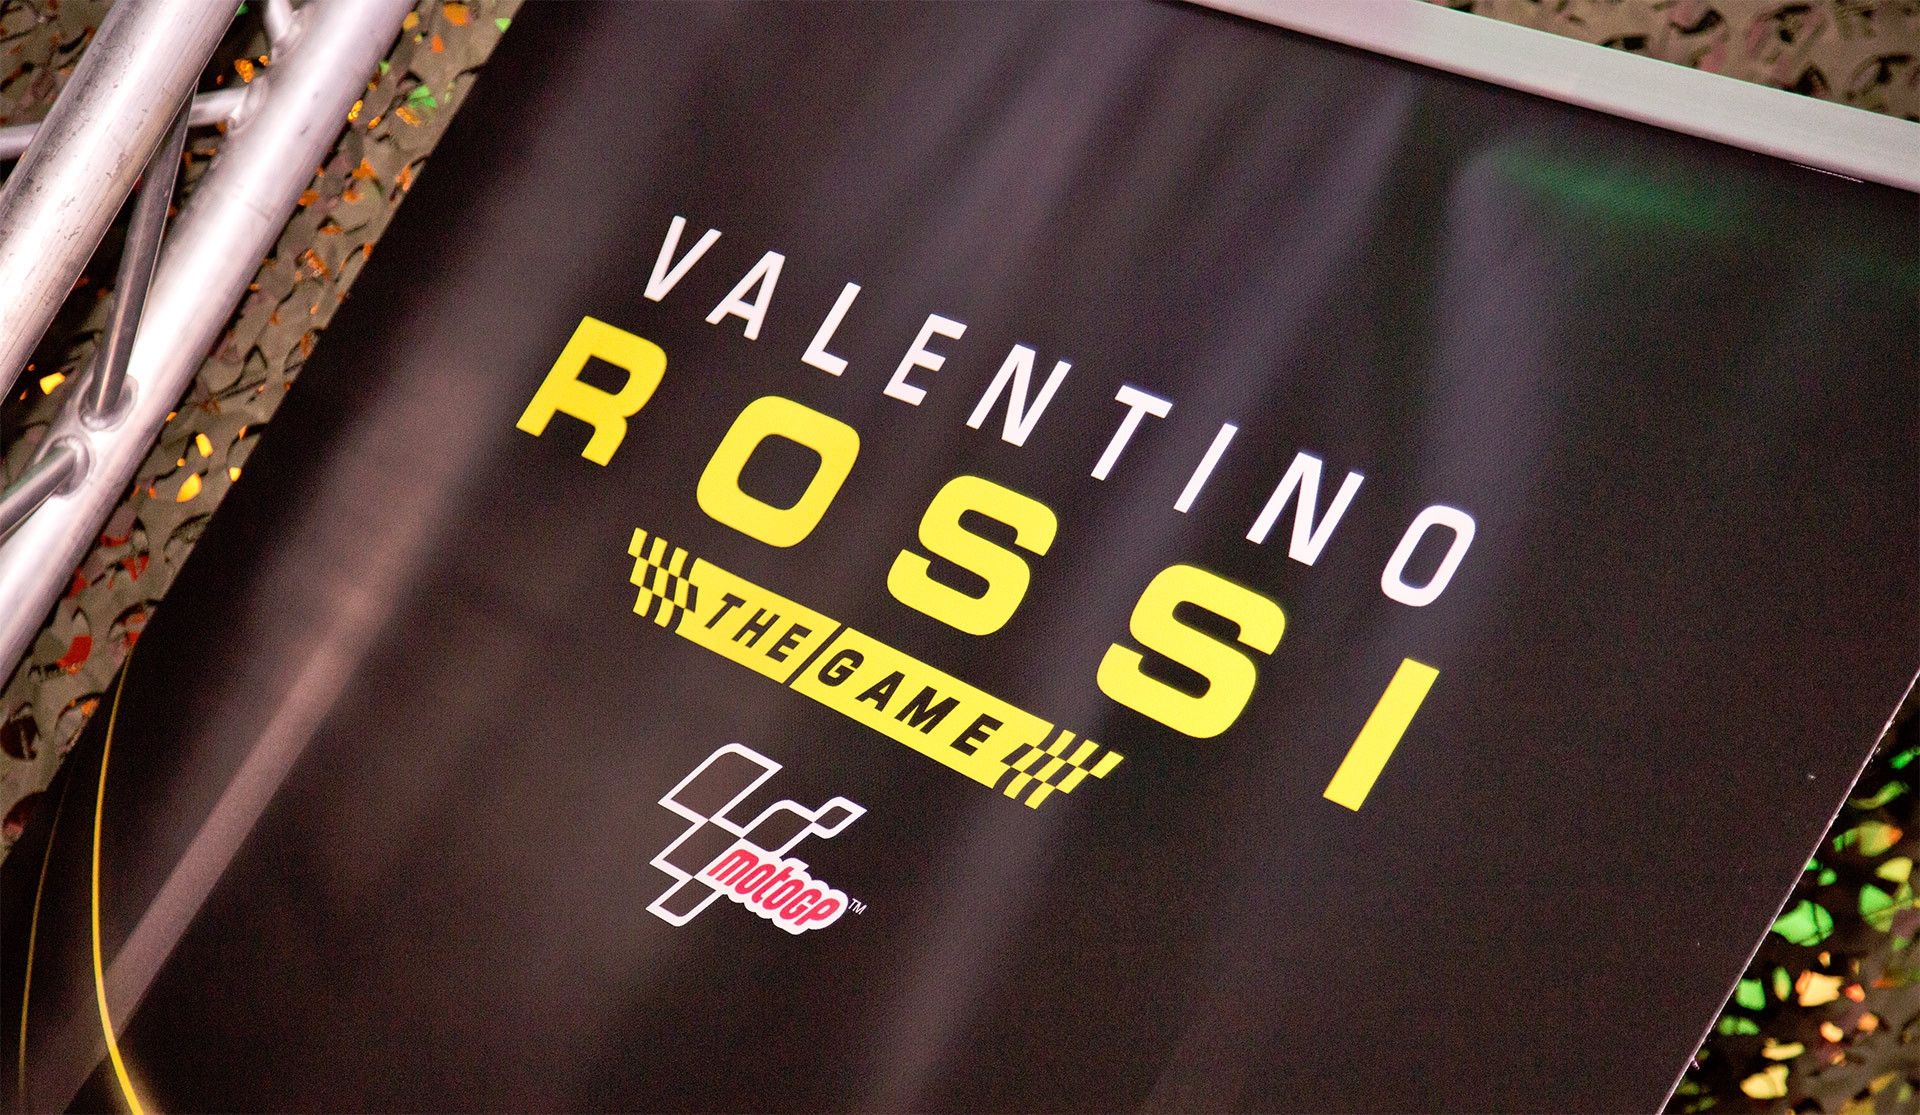 Il gioco di Valentino Rossi diventa un brand per PlayStation 4